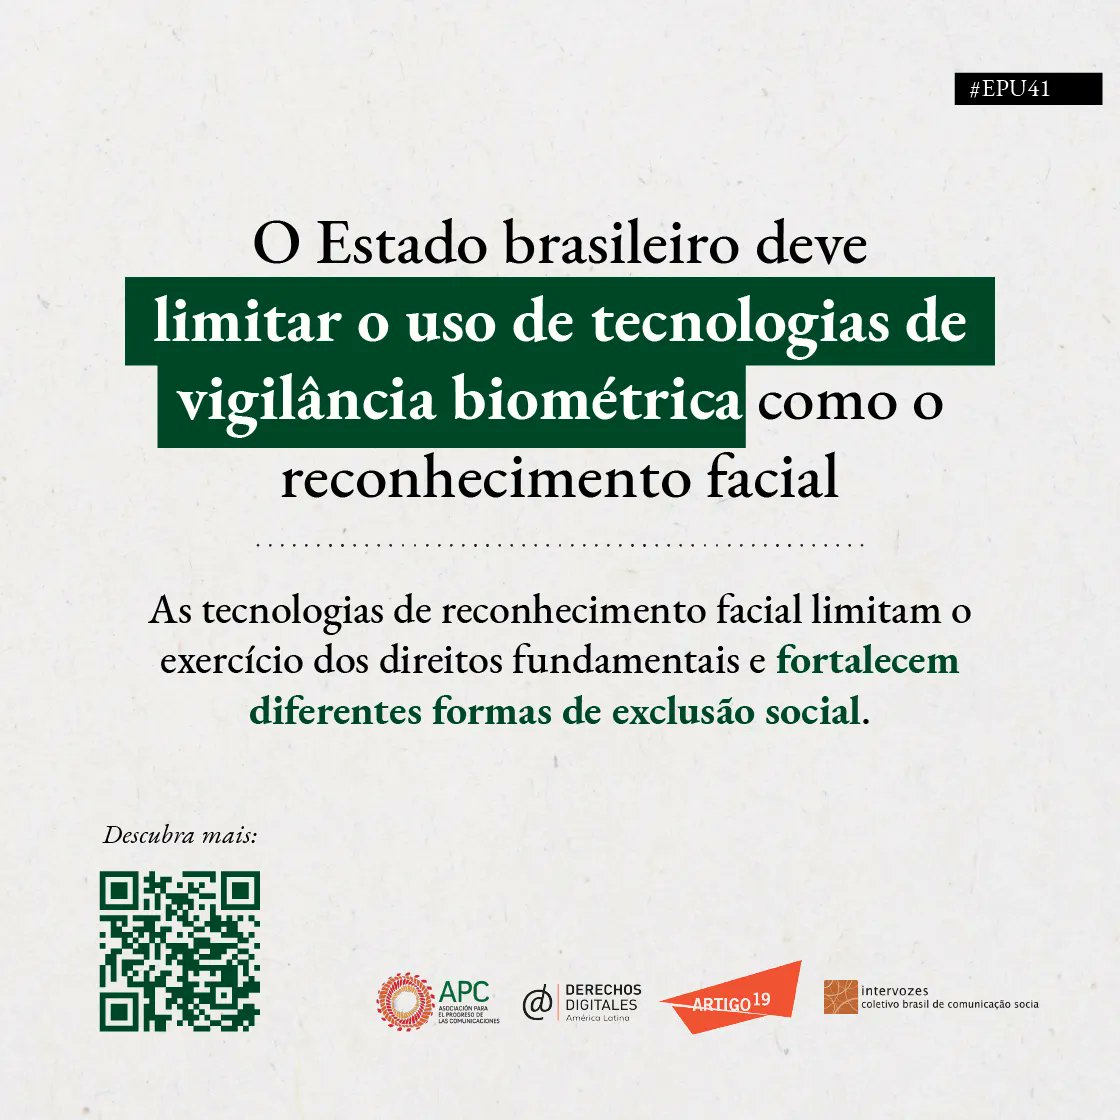 #EPU41 #BRASIL As tecnologias de reconhecimento facial limitam o exercício dos direitos fundamentais e fortalecem diferentes formas de exclusão social. Veja: derechosdigitales.org/epu/